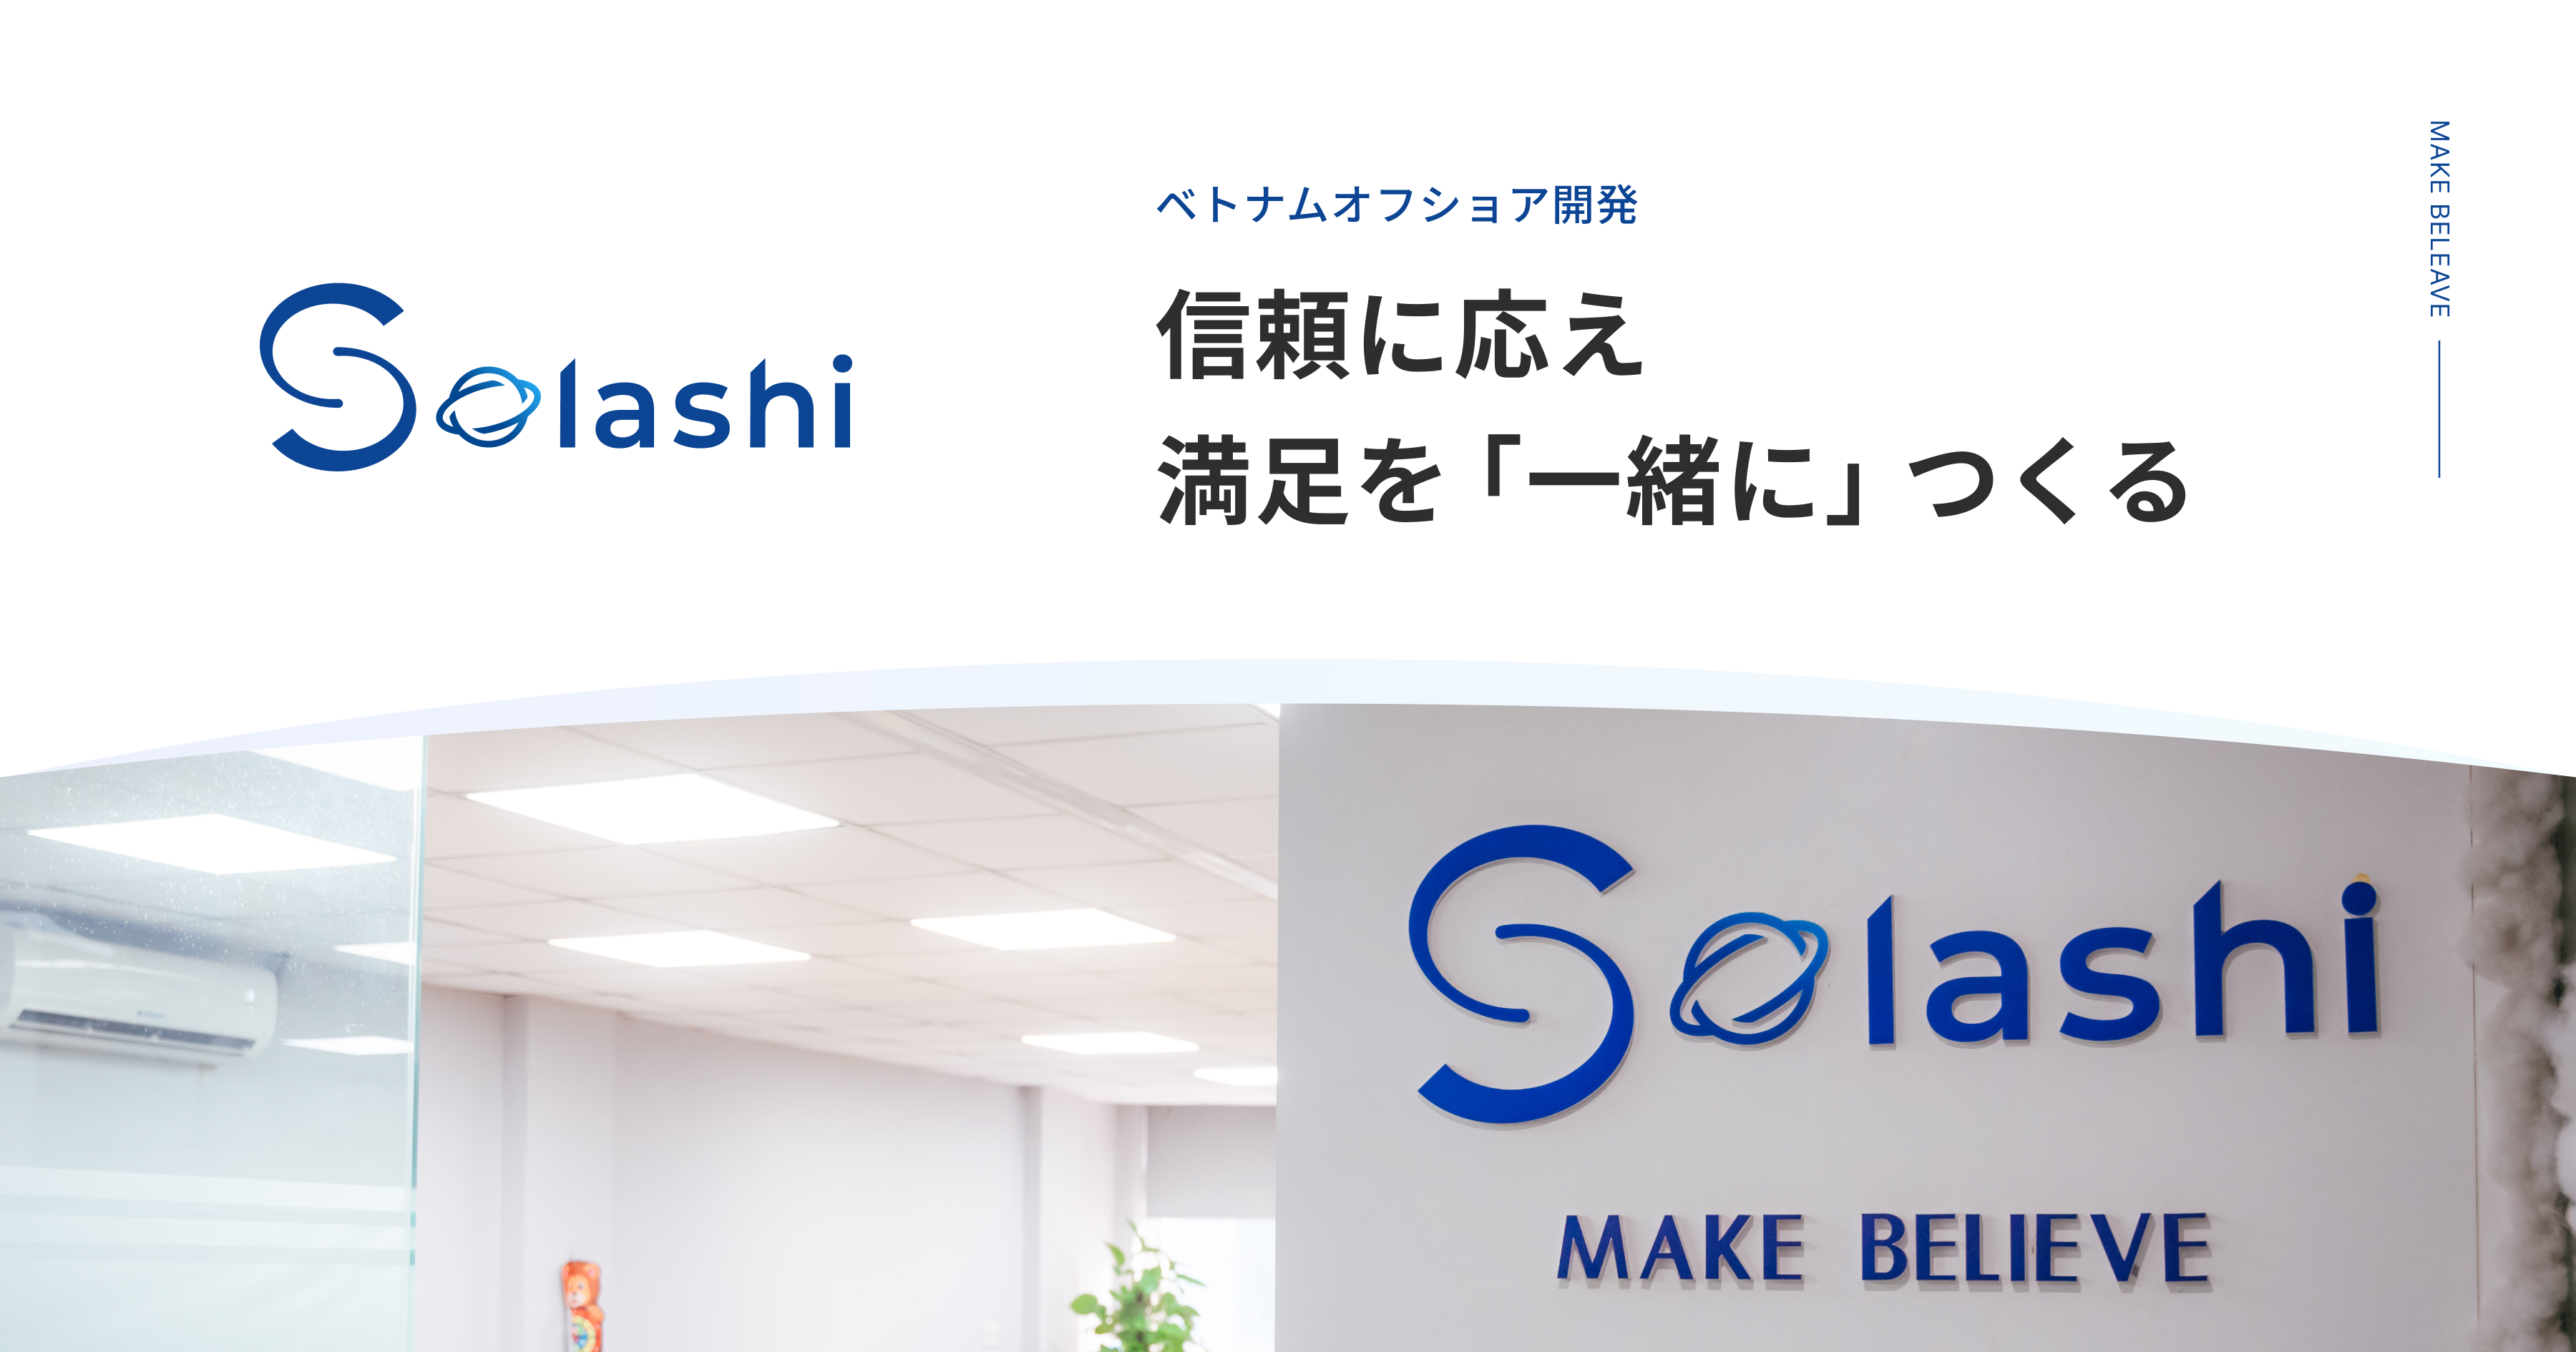 合同会社Solashi Japanの合同会社Solashi Japanサービス